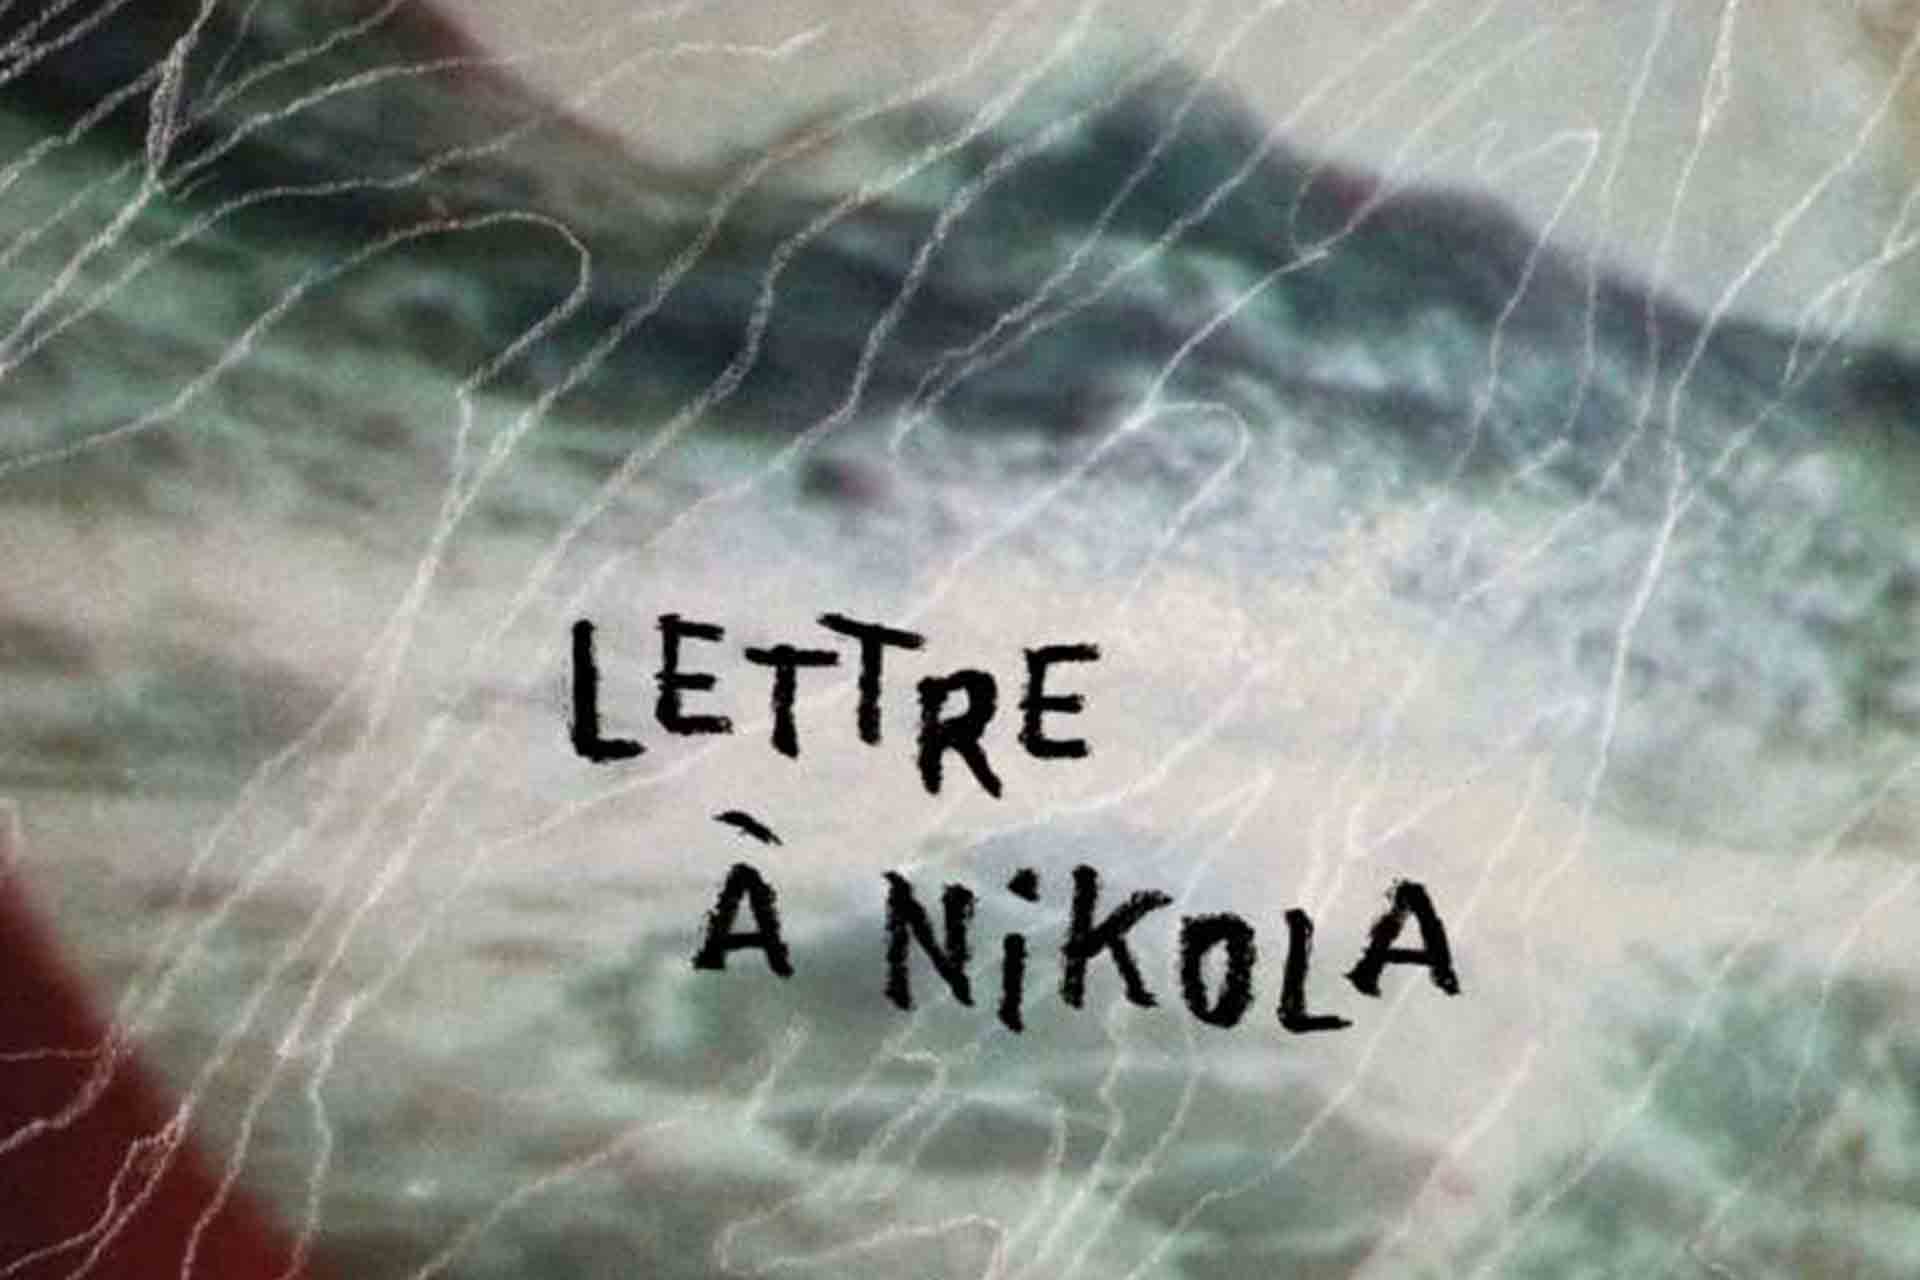 Lettre à Nikola